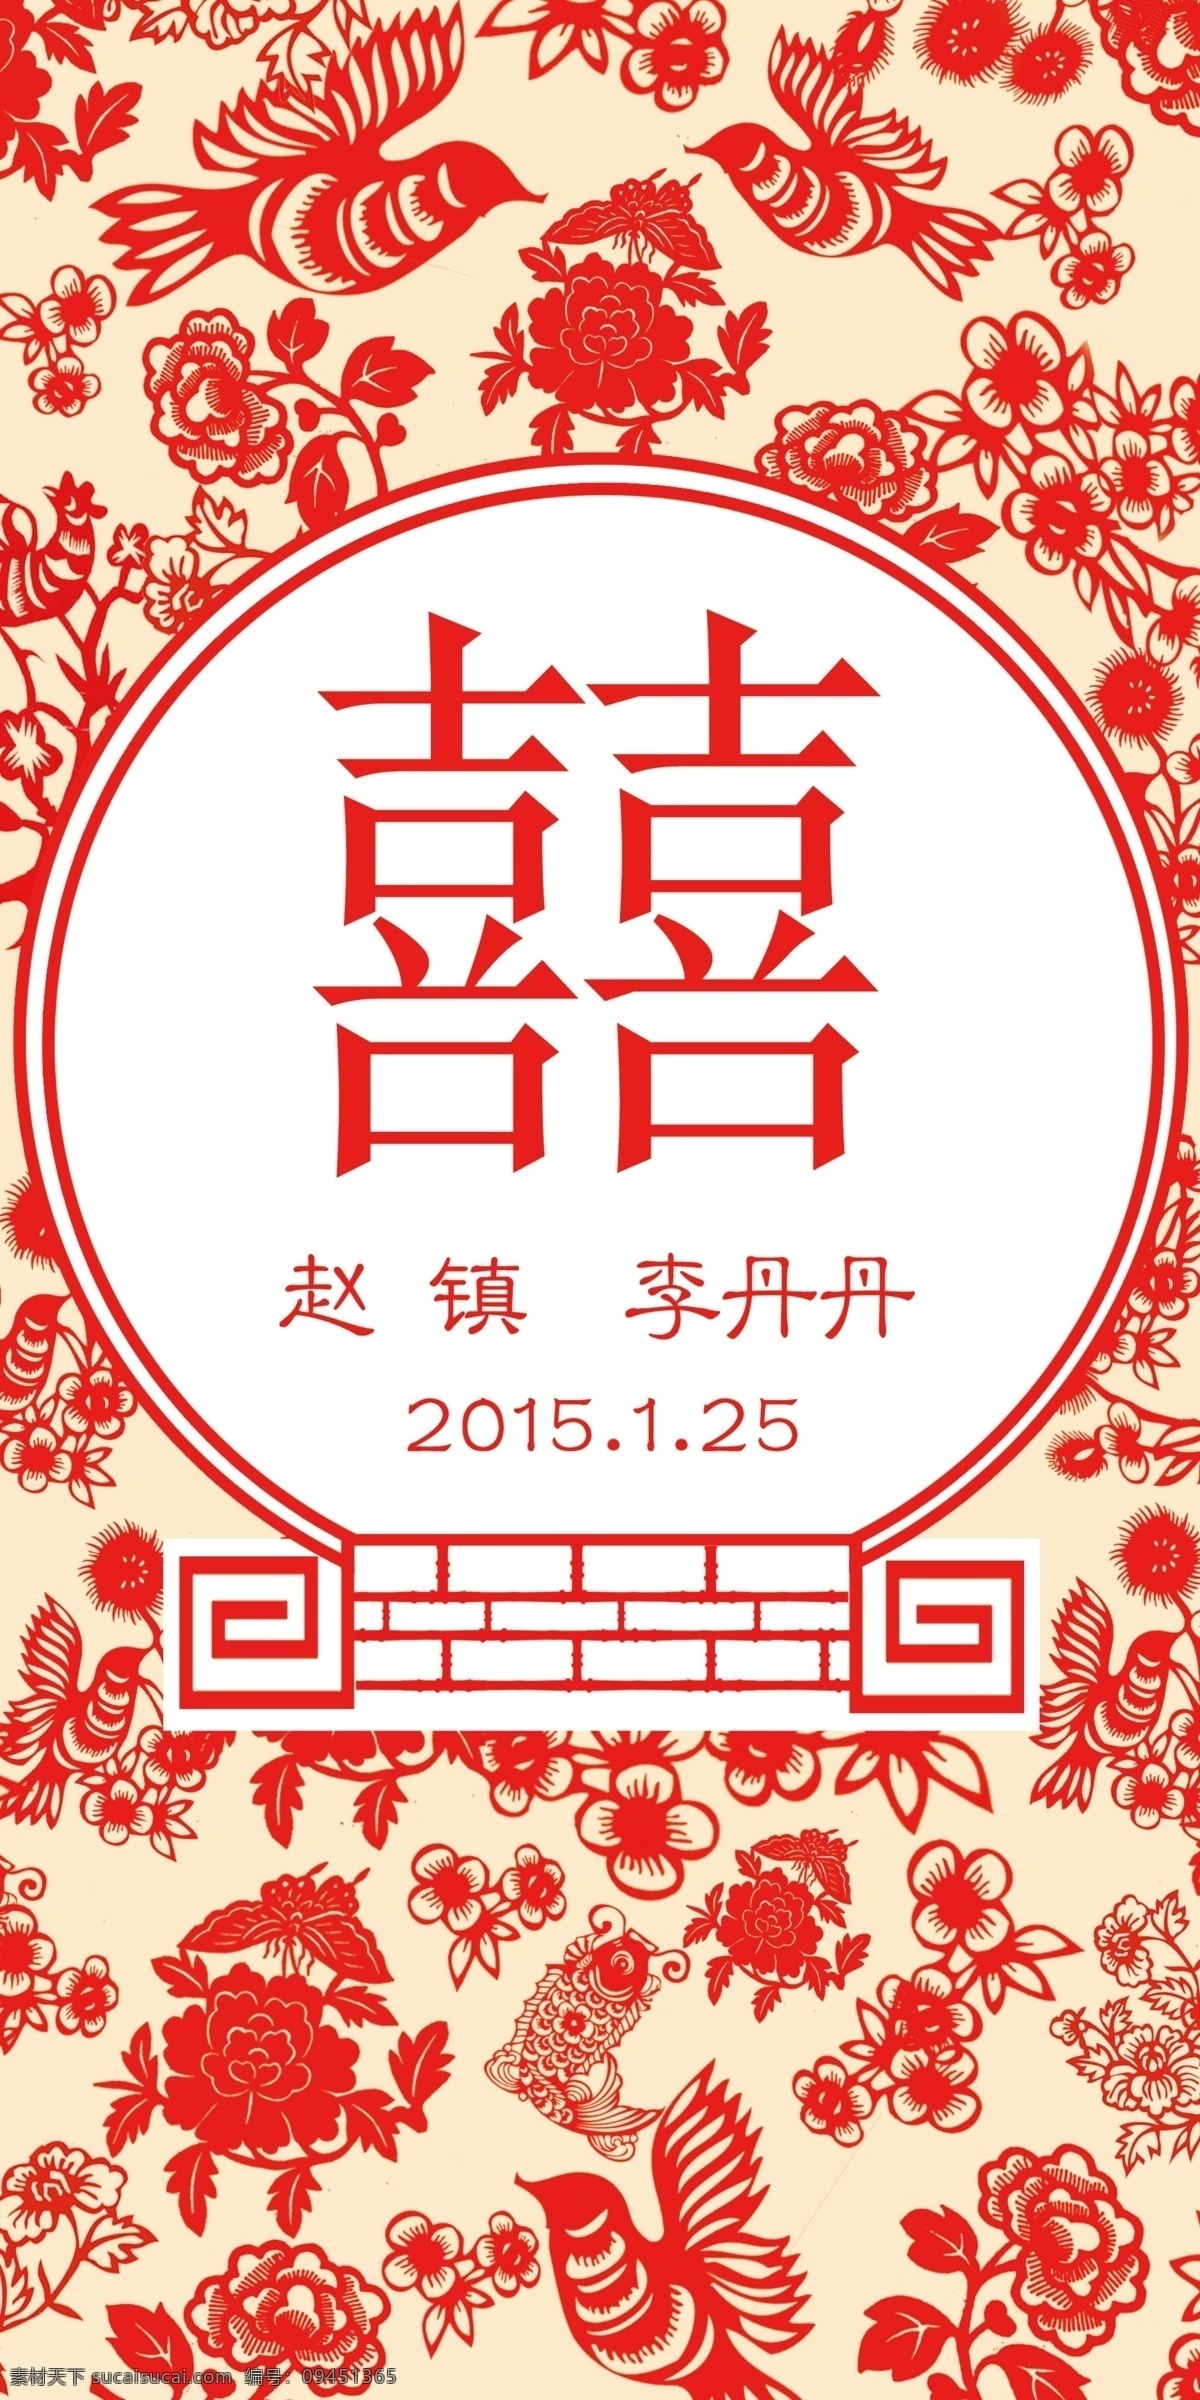 中式婚礼素材 中式 红色 迎宾区 喜字 花纹 分层 背景素材